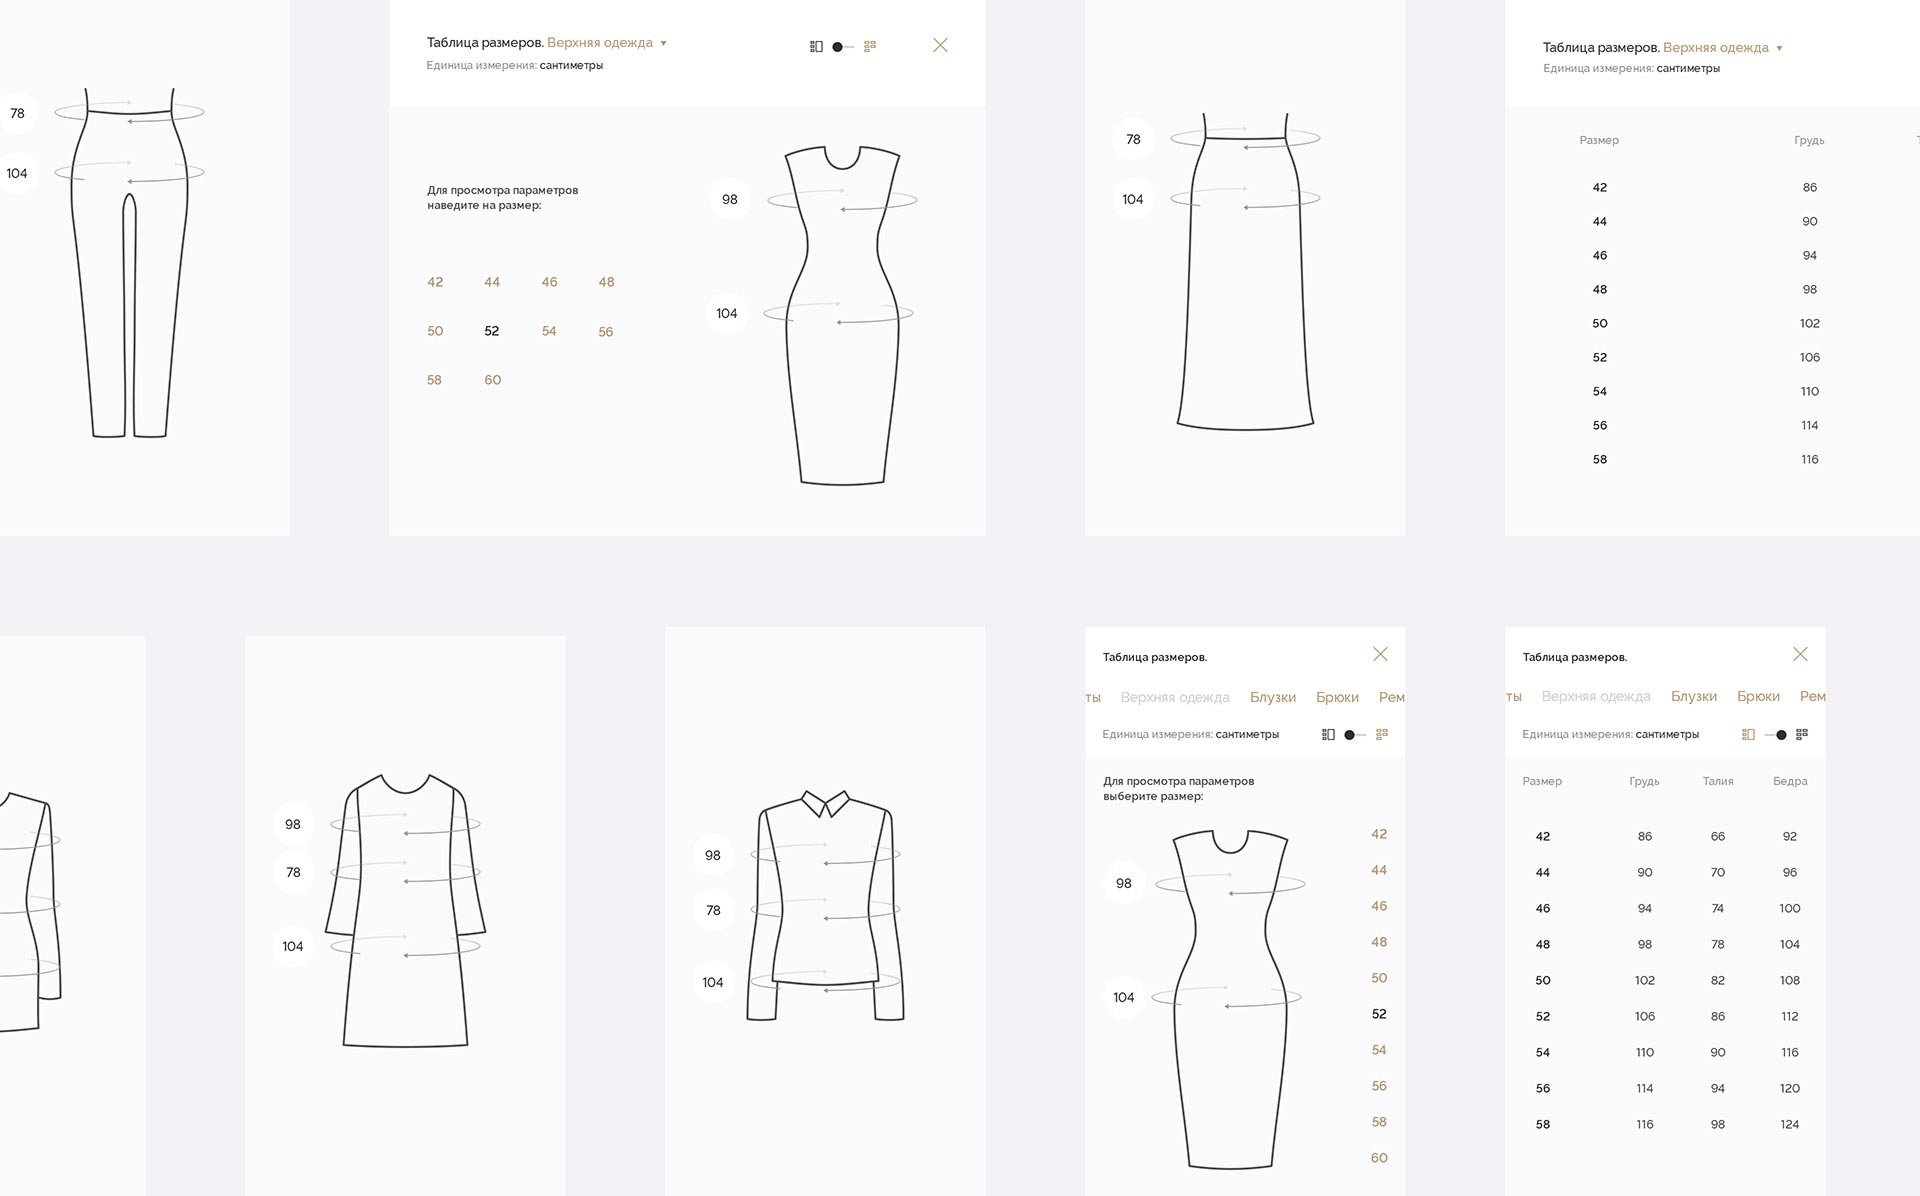 Таблица размеров на сайте оптового интернет-магазина женской одежды Emka.